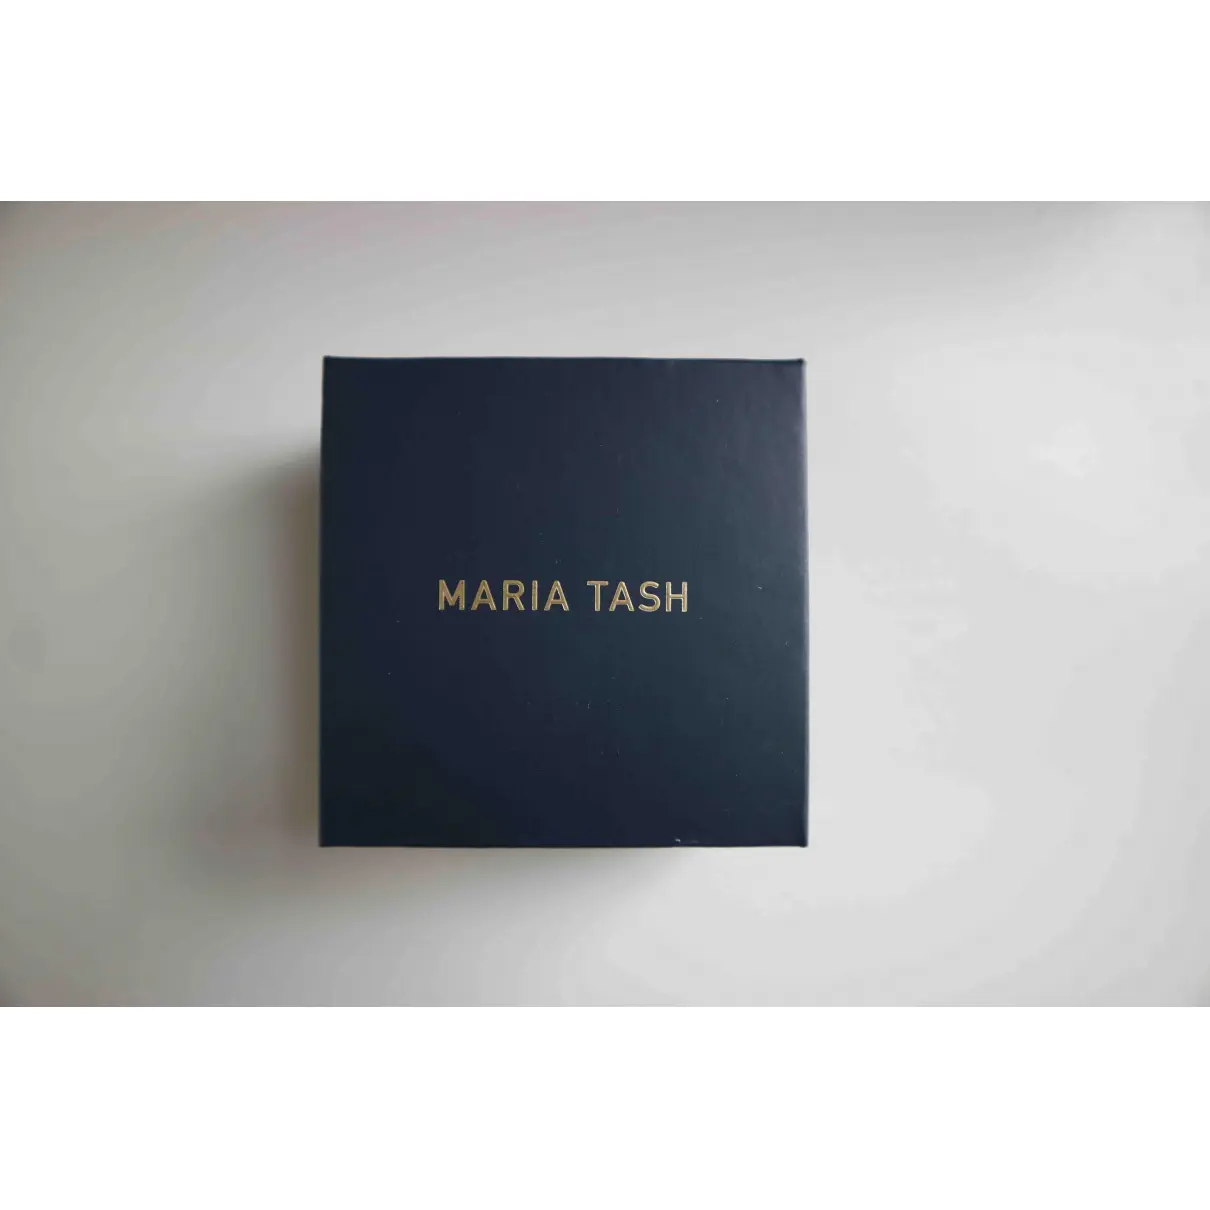 Buy Maria Tash White gold earrings online